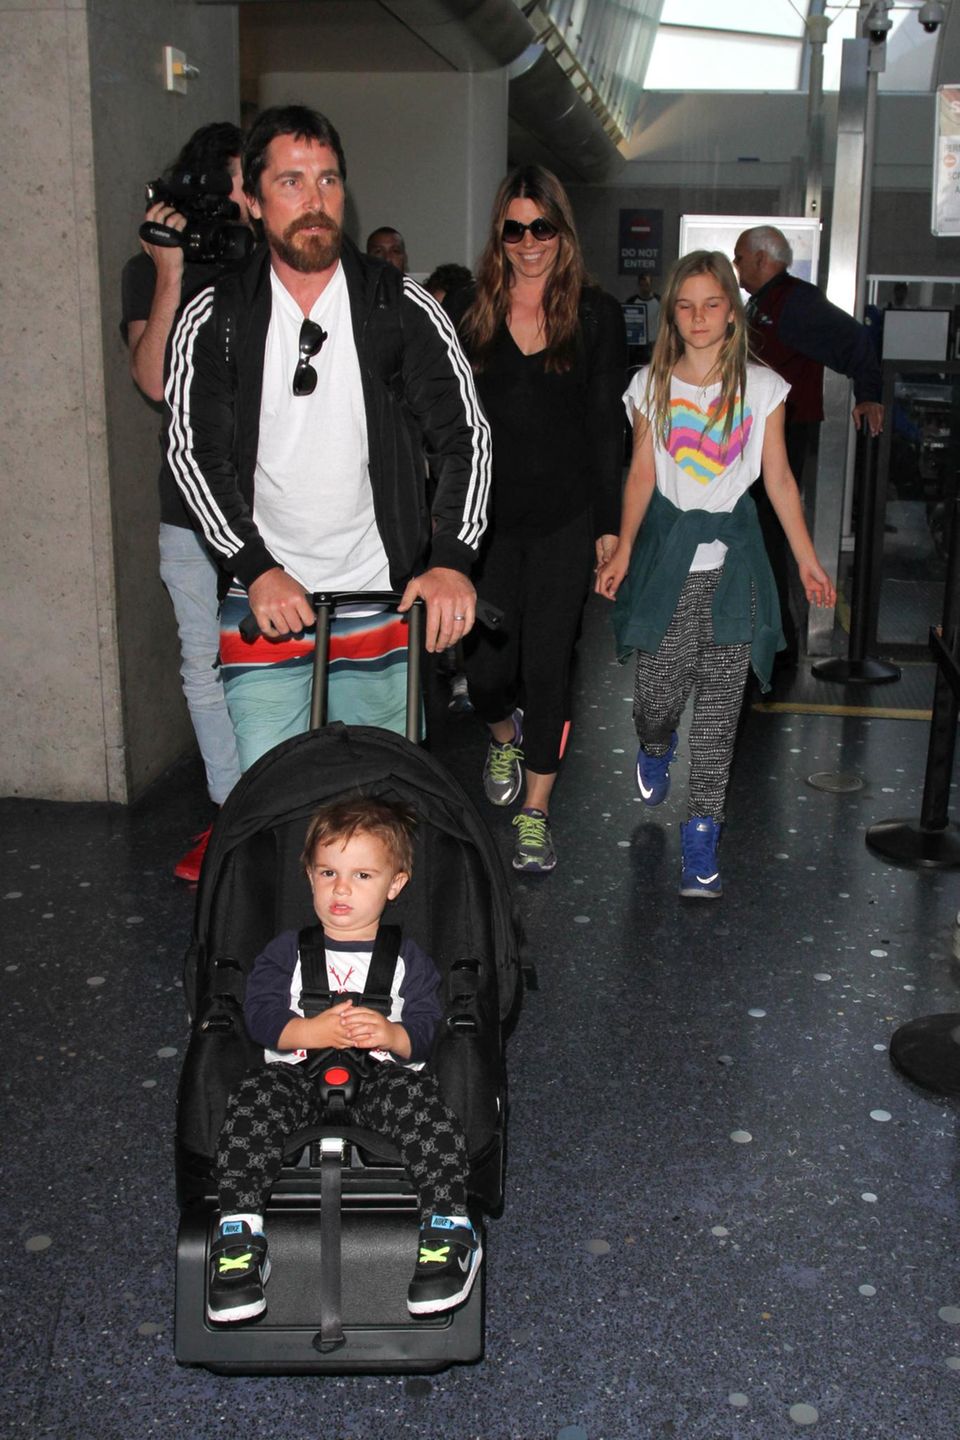 Reisen mit Kind und Kegel: Christian Bale und seine Frau Sibi Blazic sind ein eingespieltes Team. Die Familie wird am Flughafen von Los Angeles gesichtet.